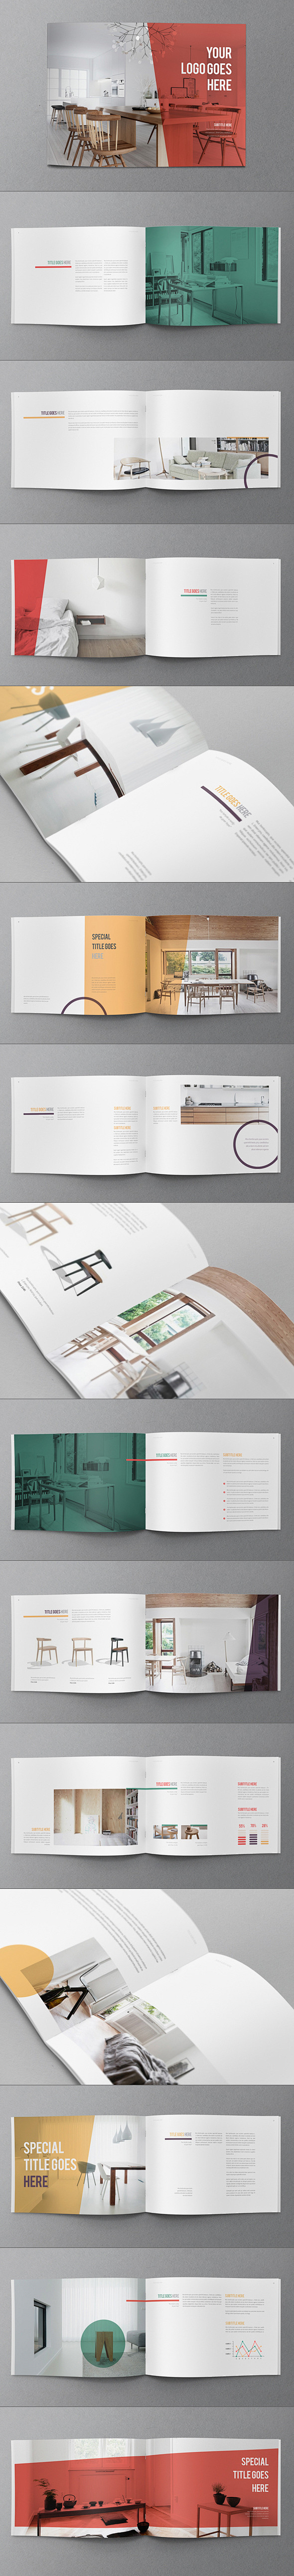 彩色图案的小册子设计 设计圈 展示 设计...